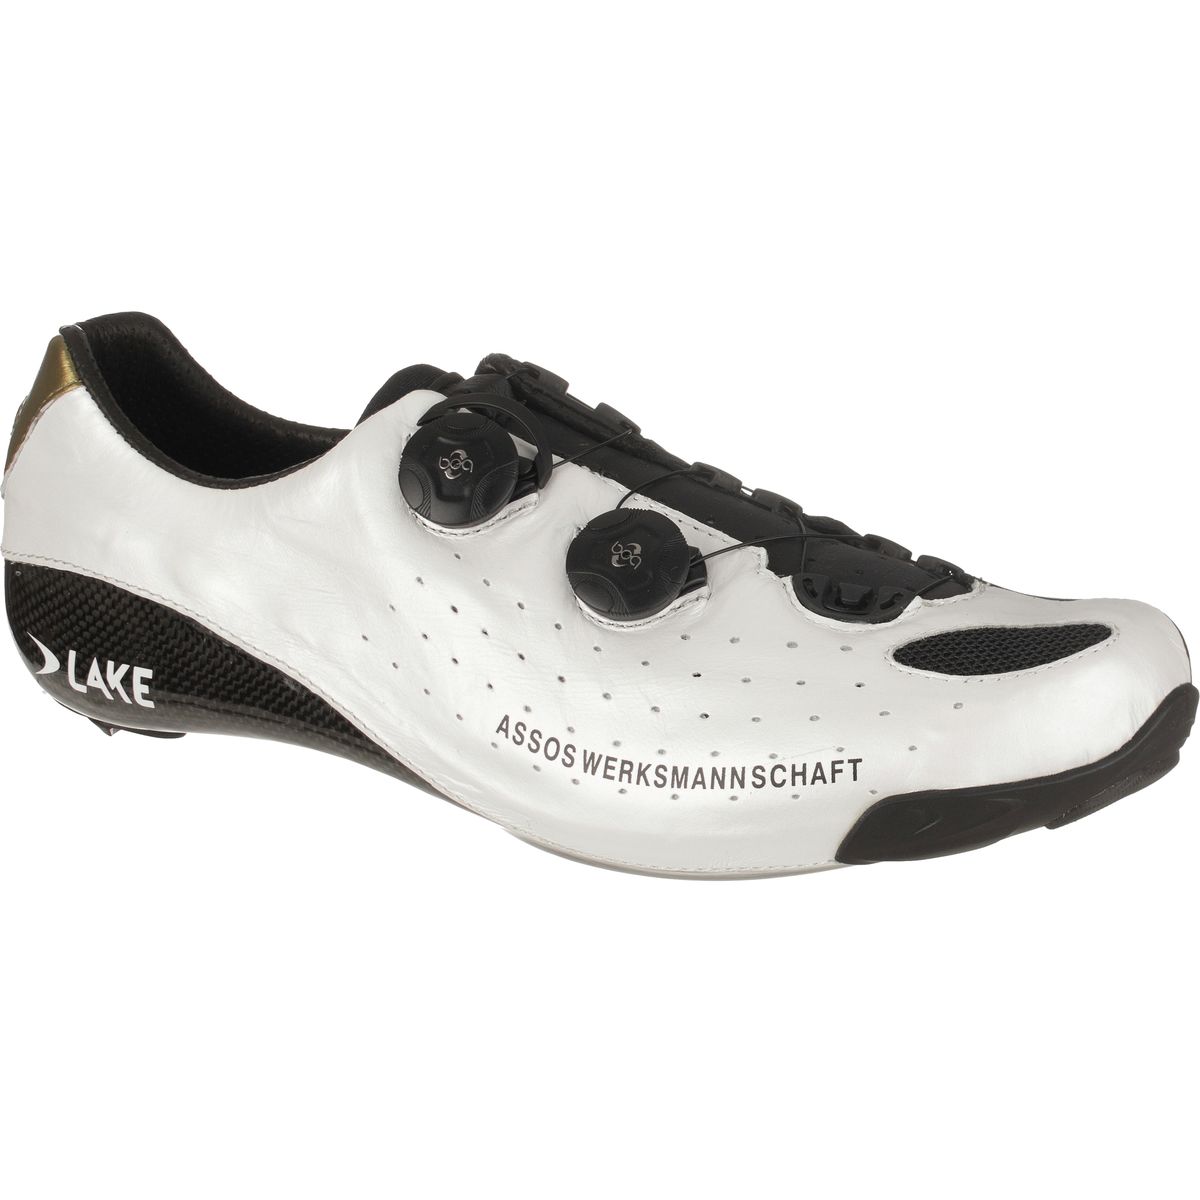 Assos CyclingSlipper Shoes - Men's